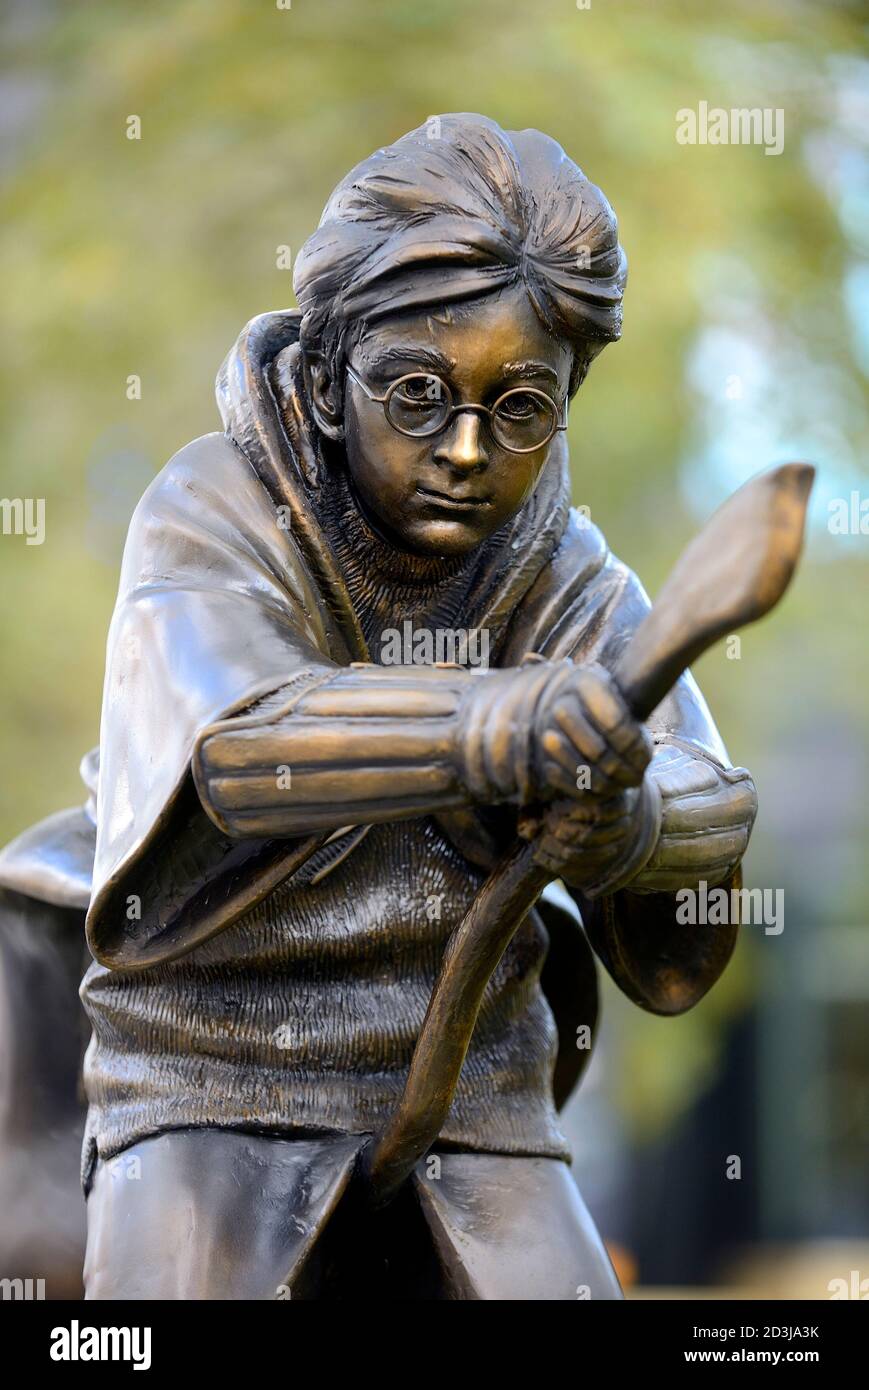 Londra, Inghilterra, Regno Unito. Harry Potter (Daniel Radcliffe) statua di bronzo in Leicester Square, ultima aggiunta alle scene nel percorso della Piazza (svelata Oc Foto Stock